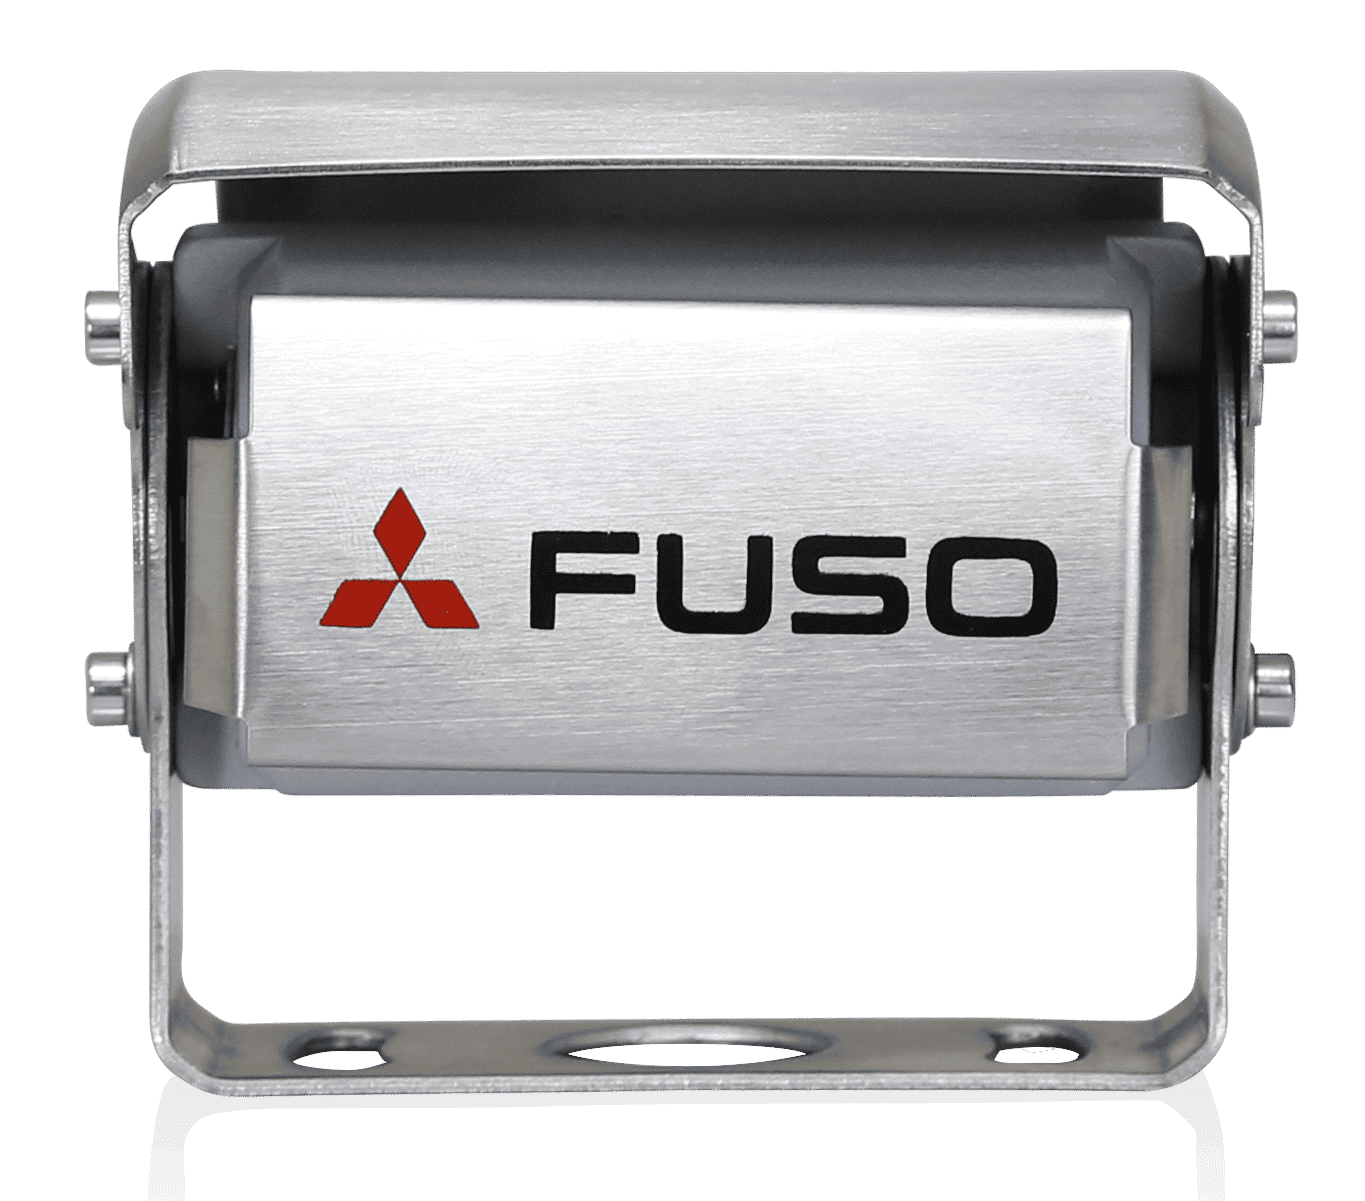 FUSO bakkamera er et effektivt produkt, der forener bedste udsyn med højeste sikkerhed. Det har en indbygget mikrofon, der bidrager til en bedre registrering af området bag dit køretøj. I mørke ændres displayfarven automatisk, for at give føreren et optimalt udsyn. Systemet kan drives med 12 og 24 V og opfylde de strengeste FUSO prøvningskrav. Kameraet er vandfast i henhold til IP69K. Displayet har en opløsning på 800x480x3 (RGB).